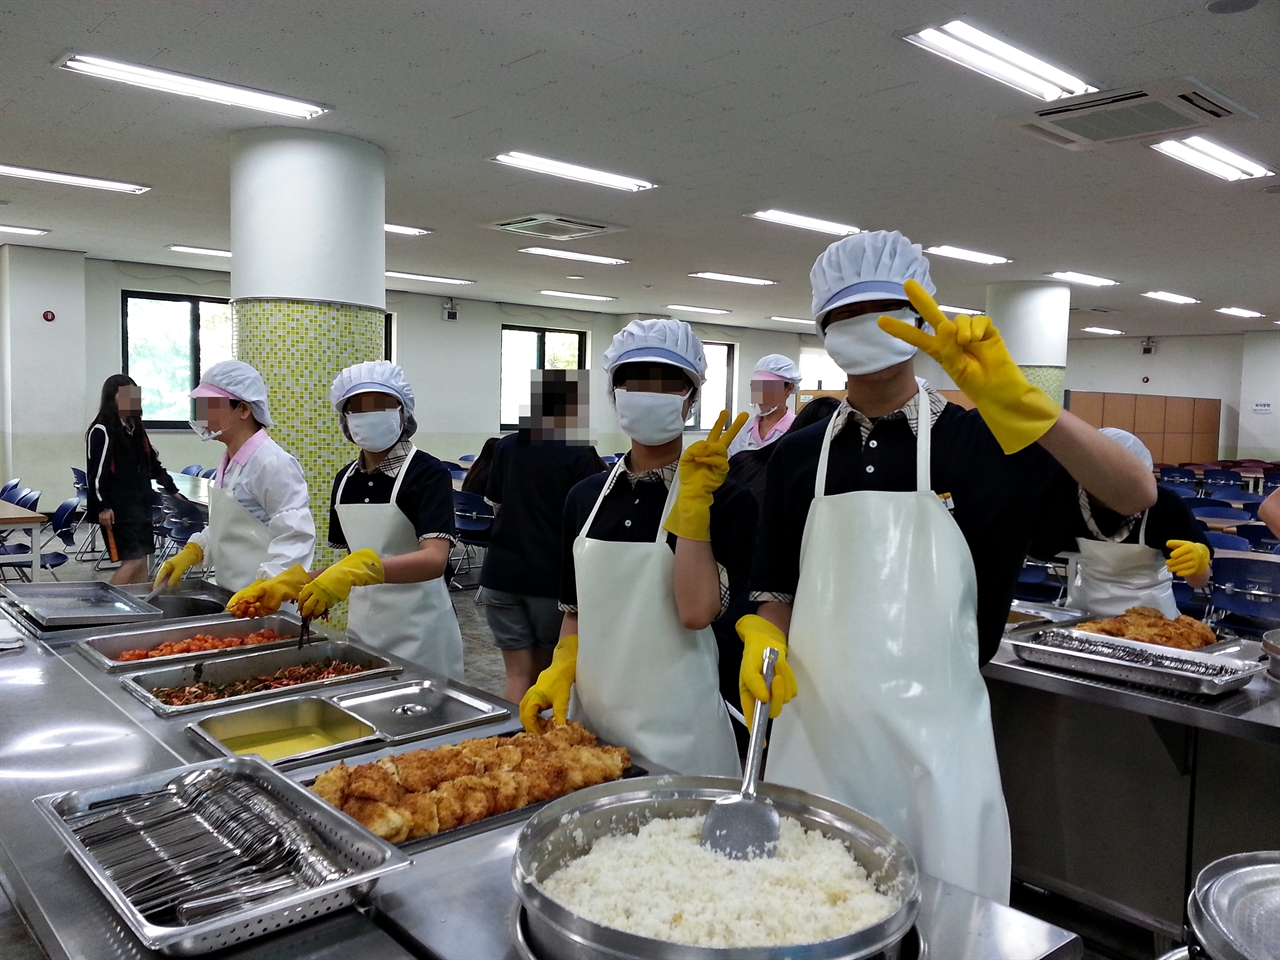 점심시간 급식 봉사활동을 하려고 학생들이 준비하고 있는 모습